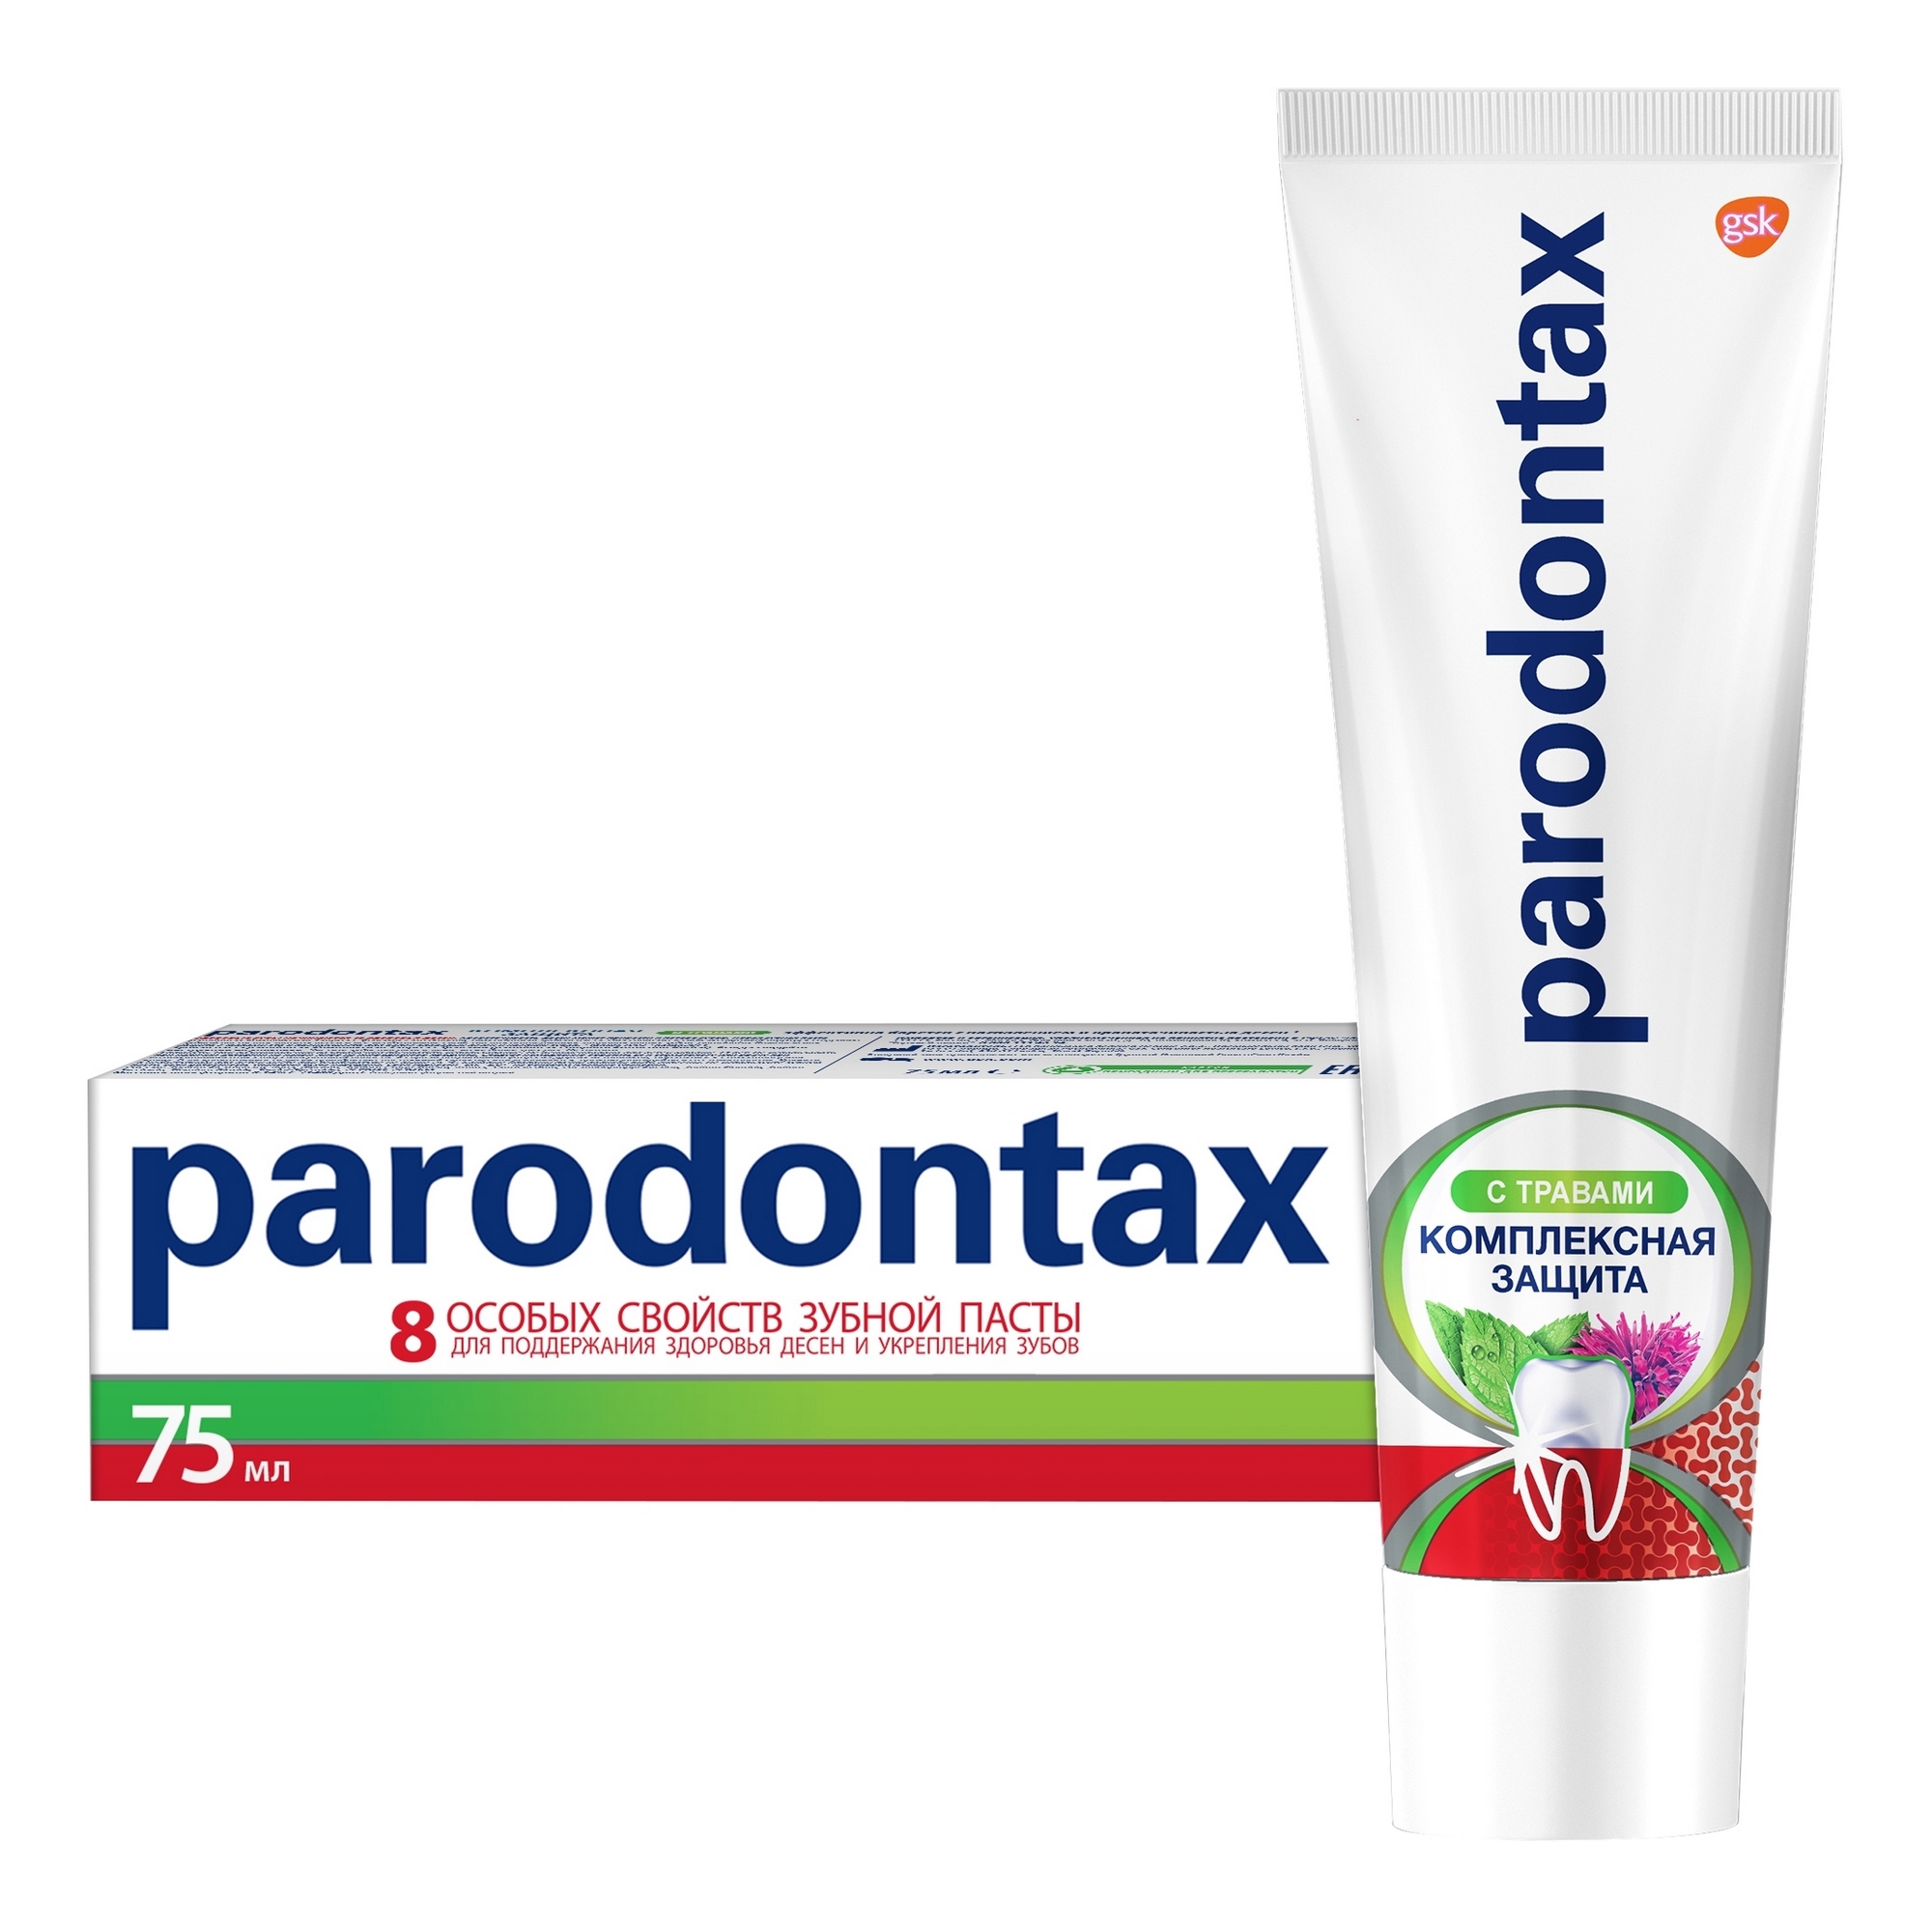 Зубная паста Parodontax Комплексная защита с травами 75 мл зубная паста parodontax комплексная защита 75 мл